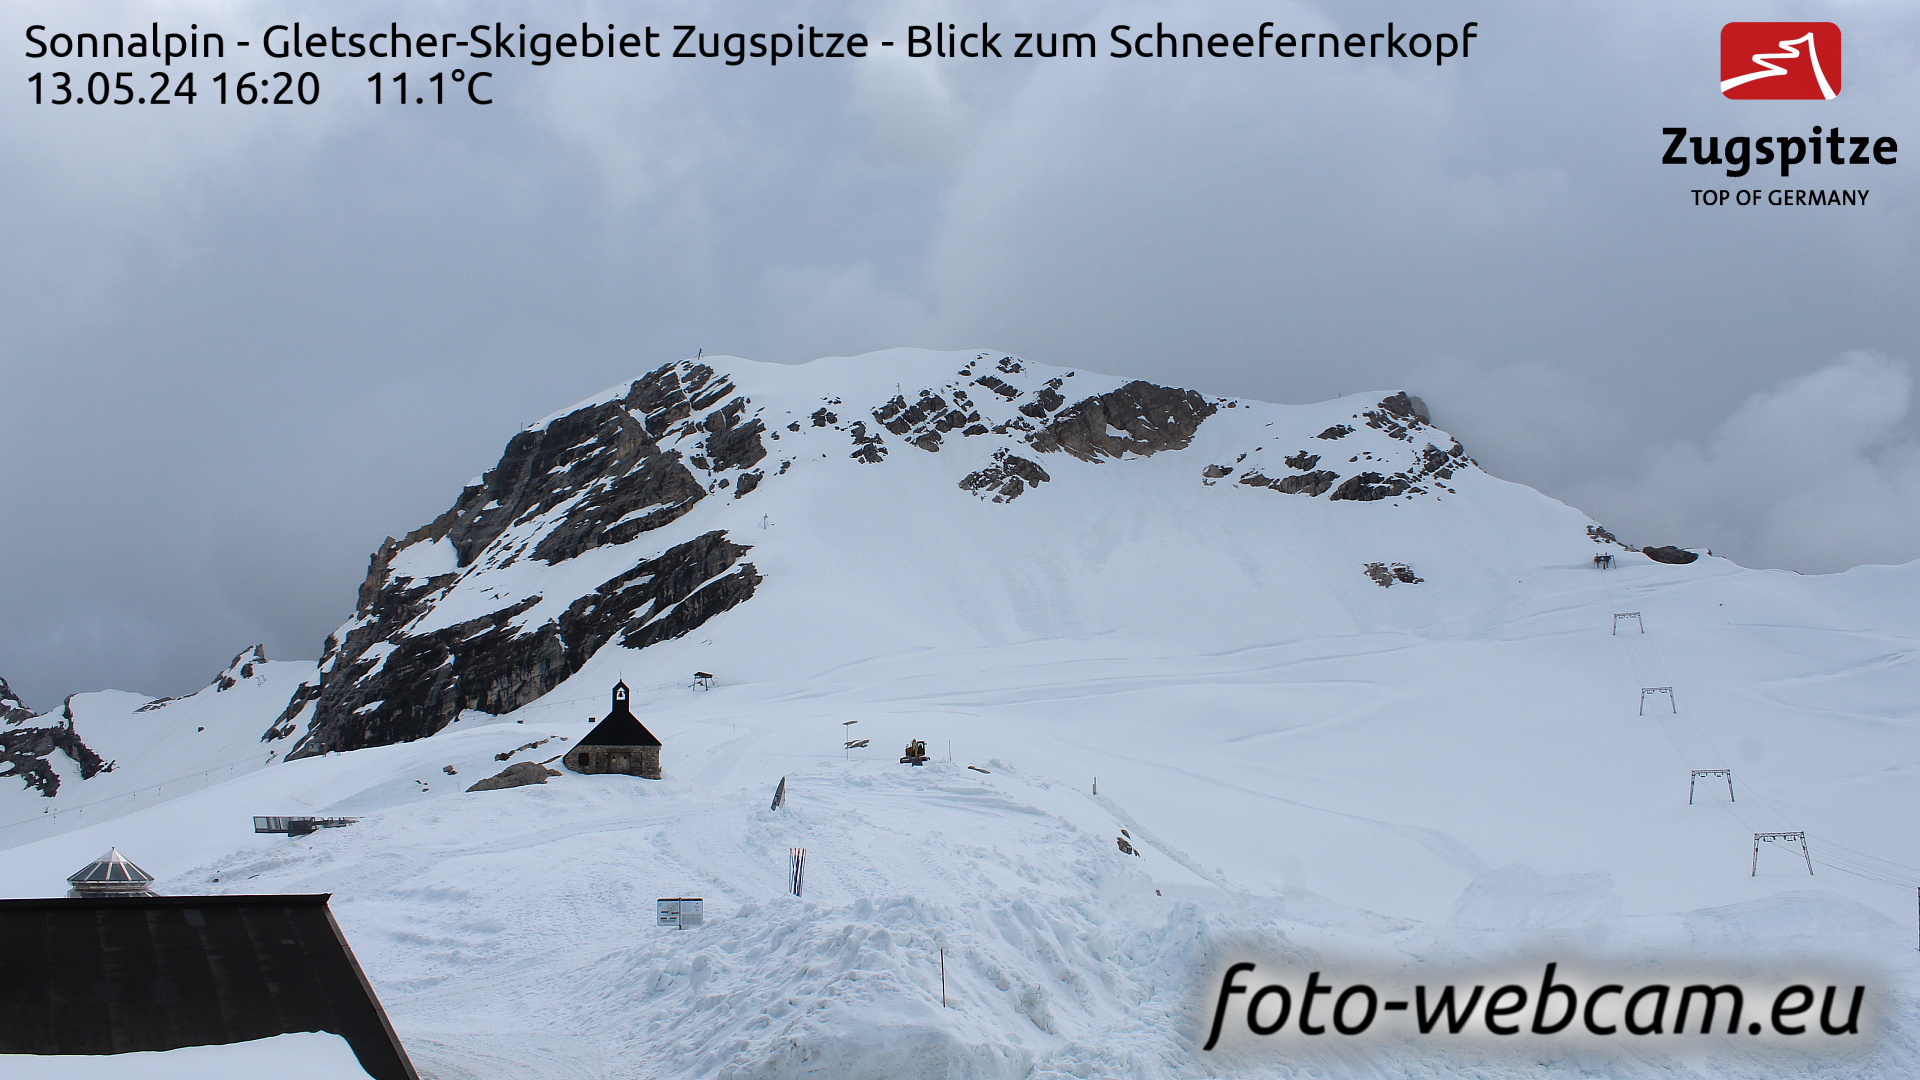 Zugspitze So. 16:24